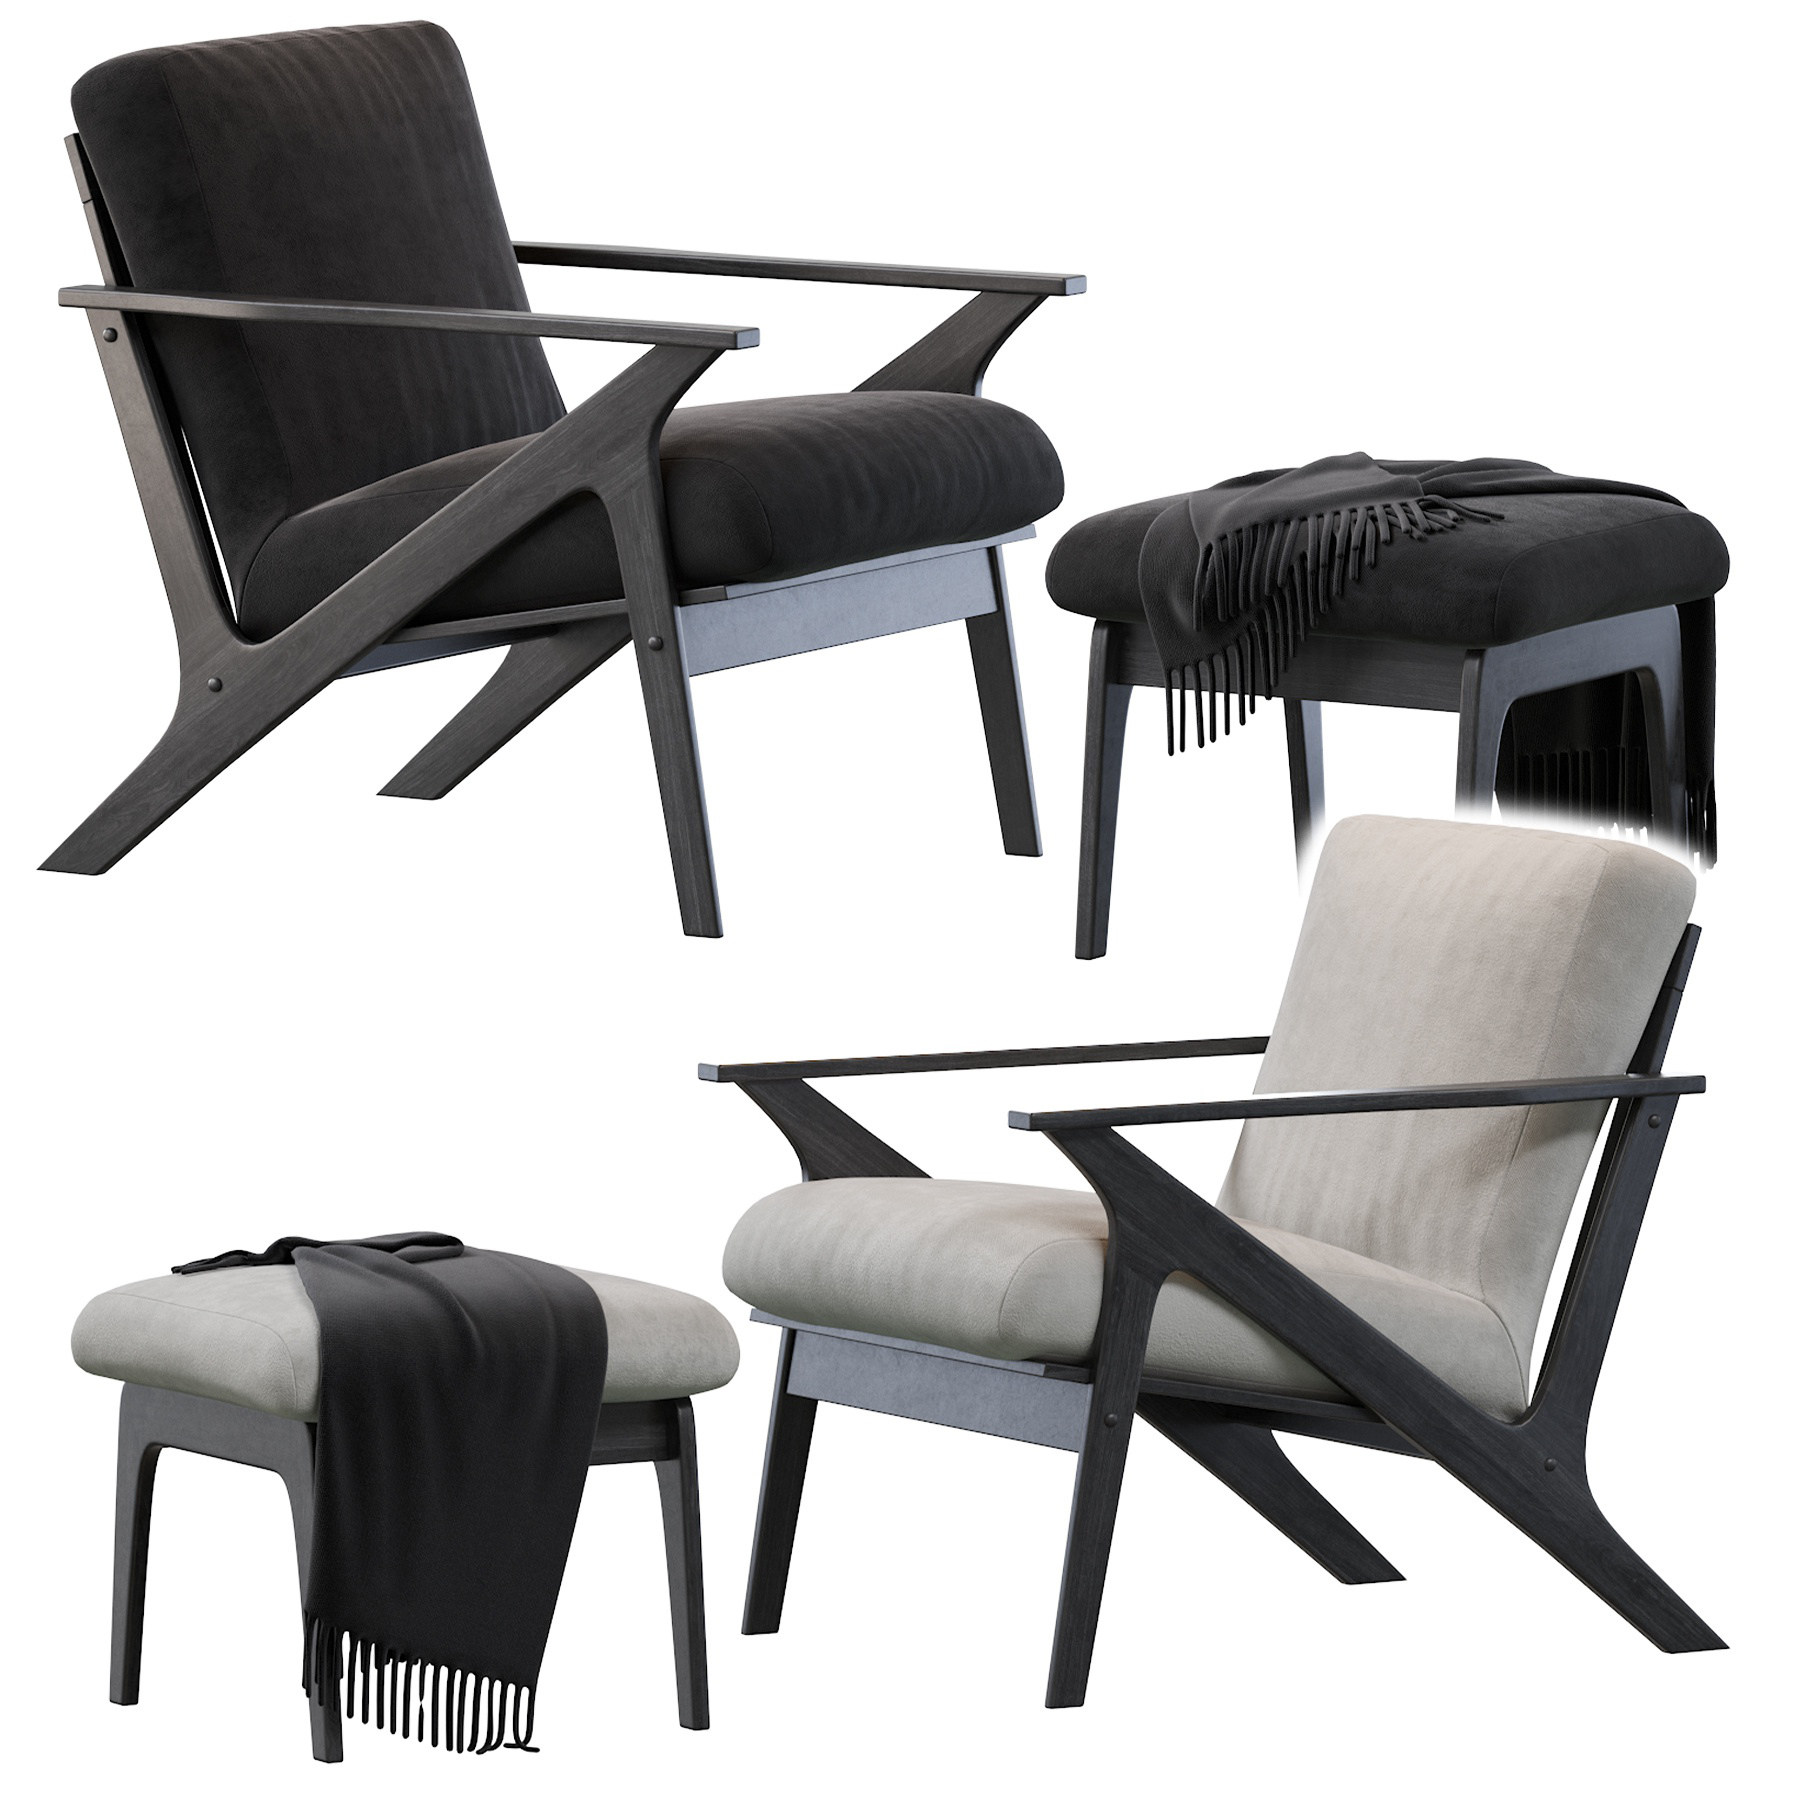 02现代北欧实木布艺休闲椅沙发椅,椅子脚凳毛毯 (1)3d模型下载